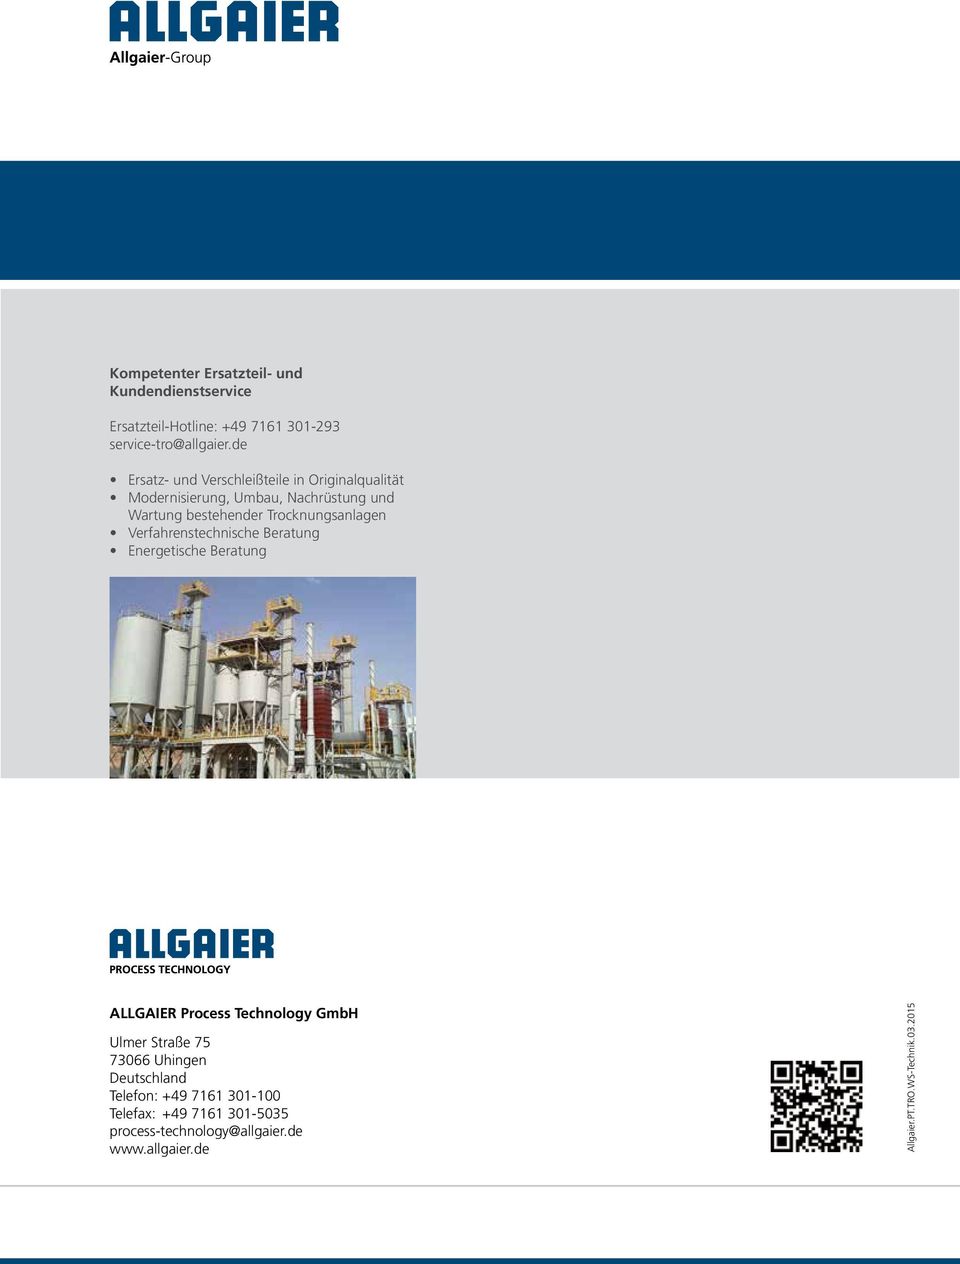 Trocknungsanlagen Verfahrenstechnische Beratung Energetische Beratung ALLGAIER Process Technology GmbH Ulmer Straße 75